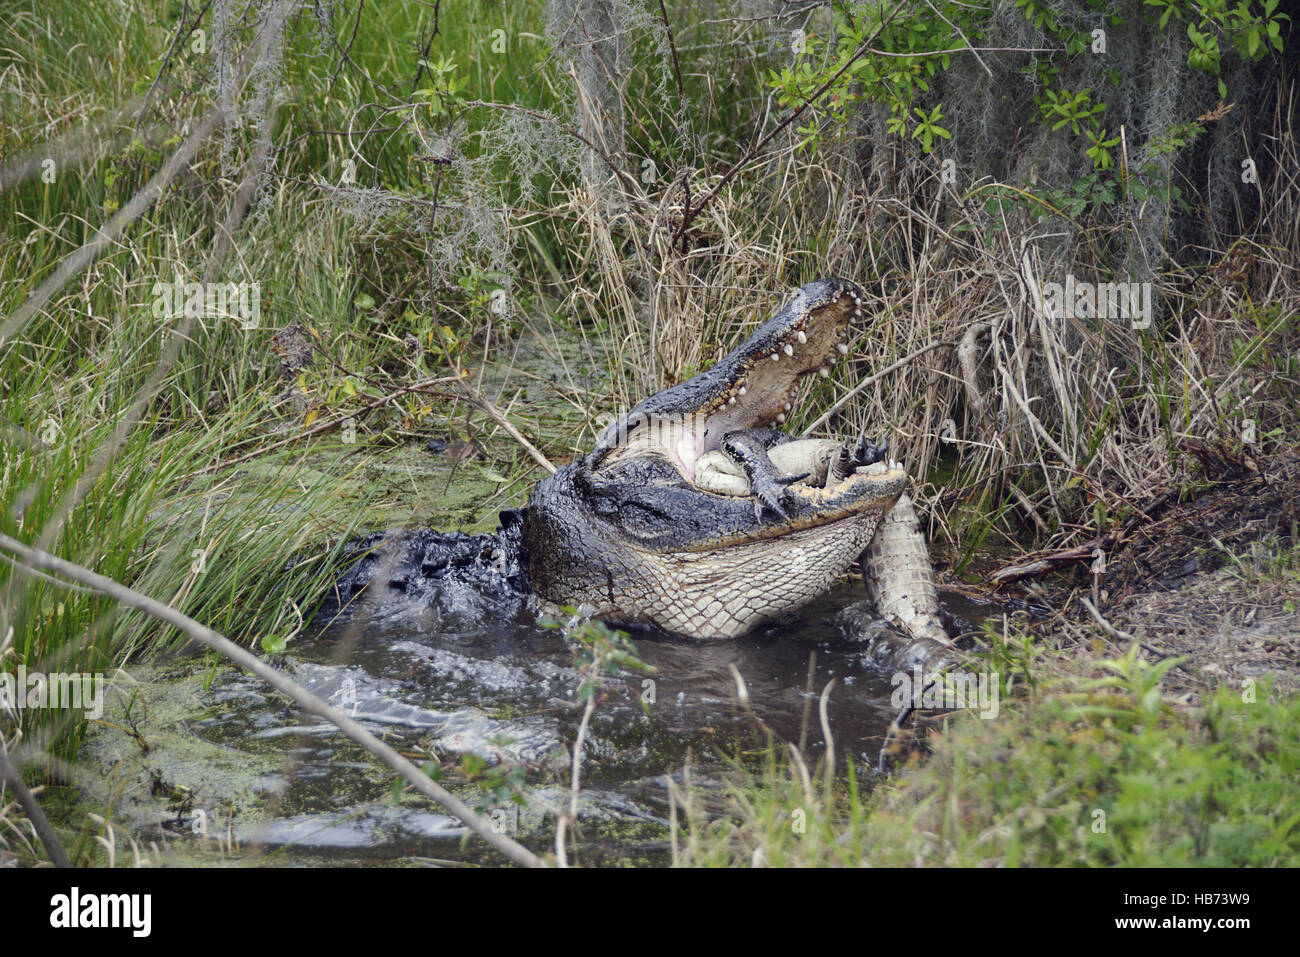 Large Florida Alligator Eating Stock Photo